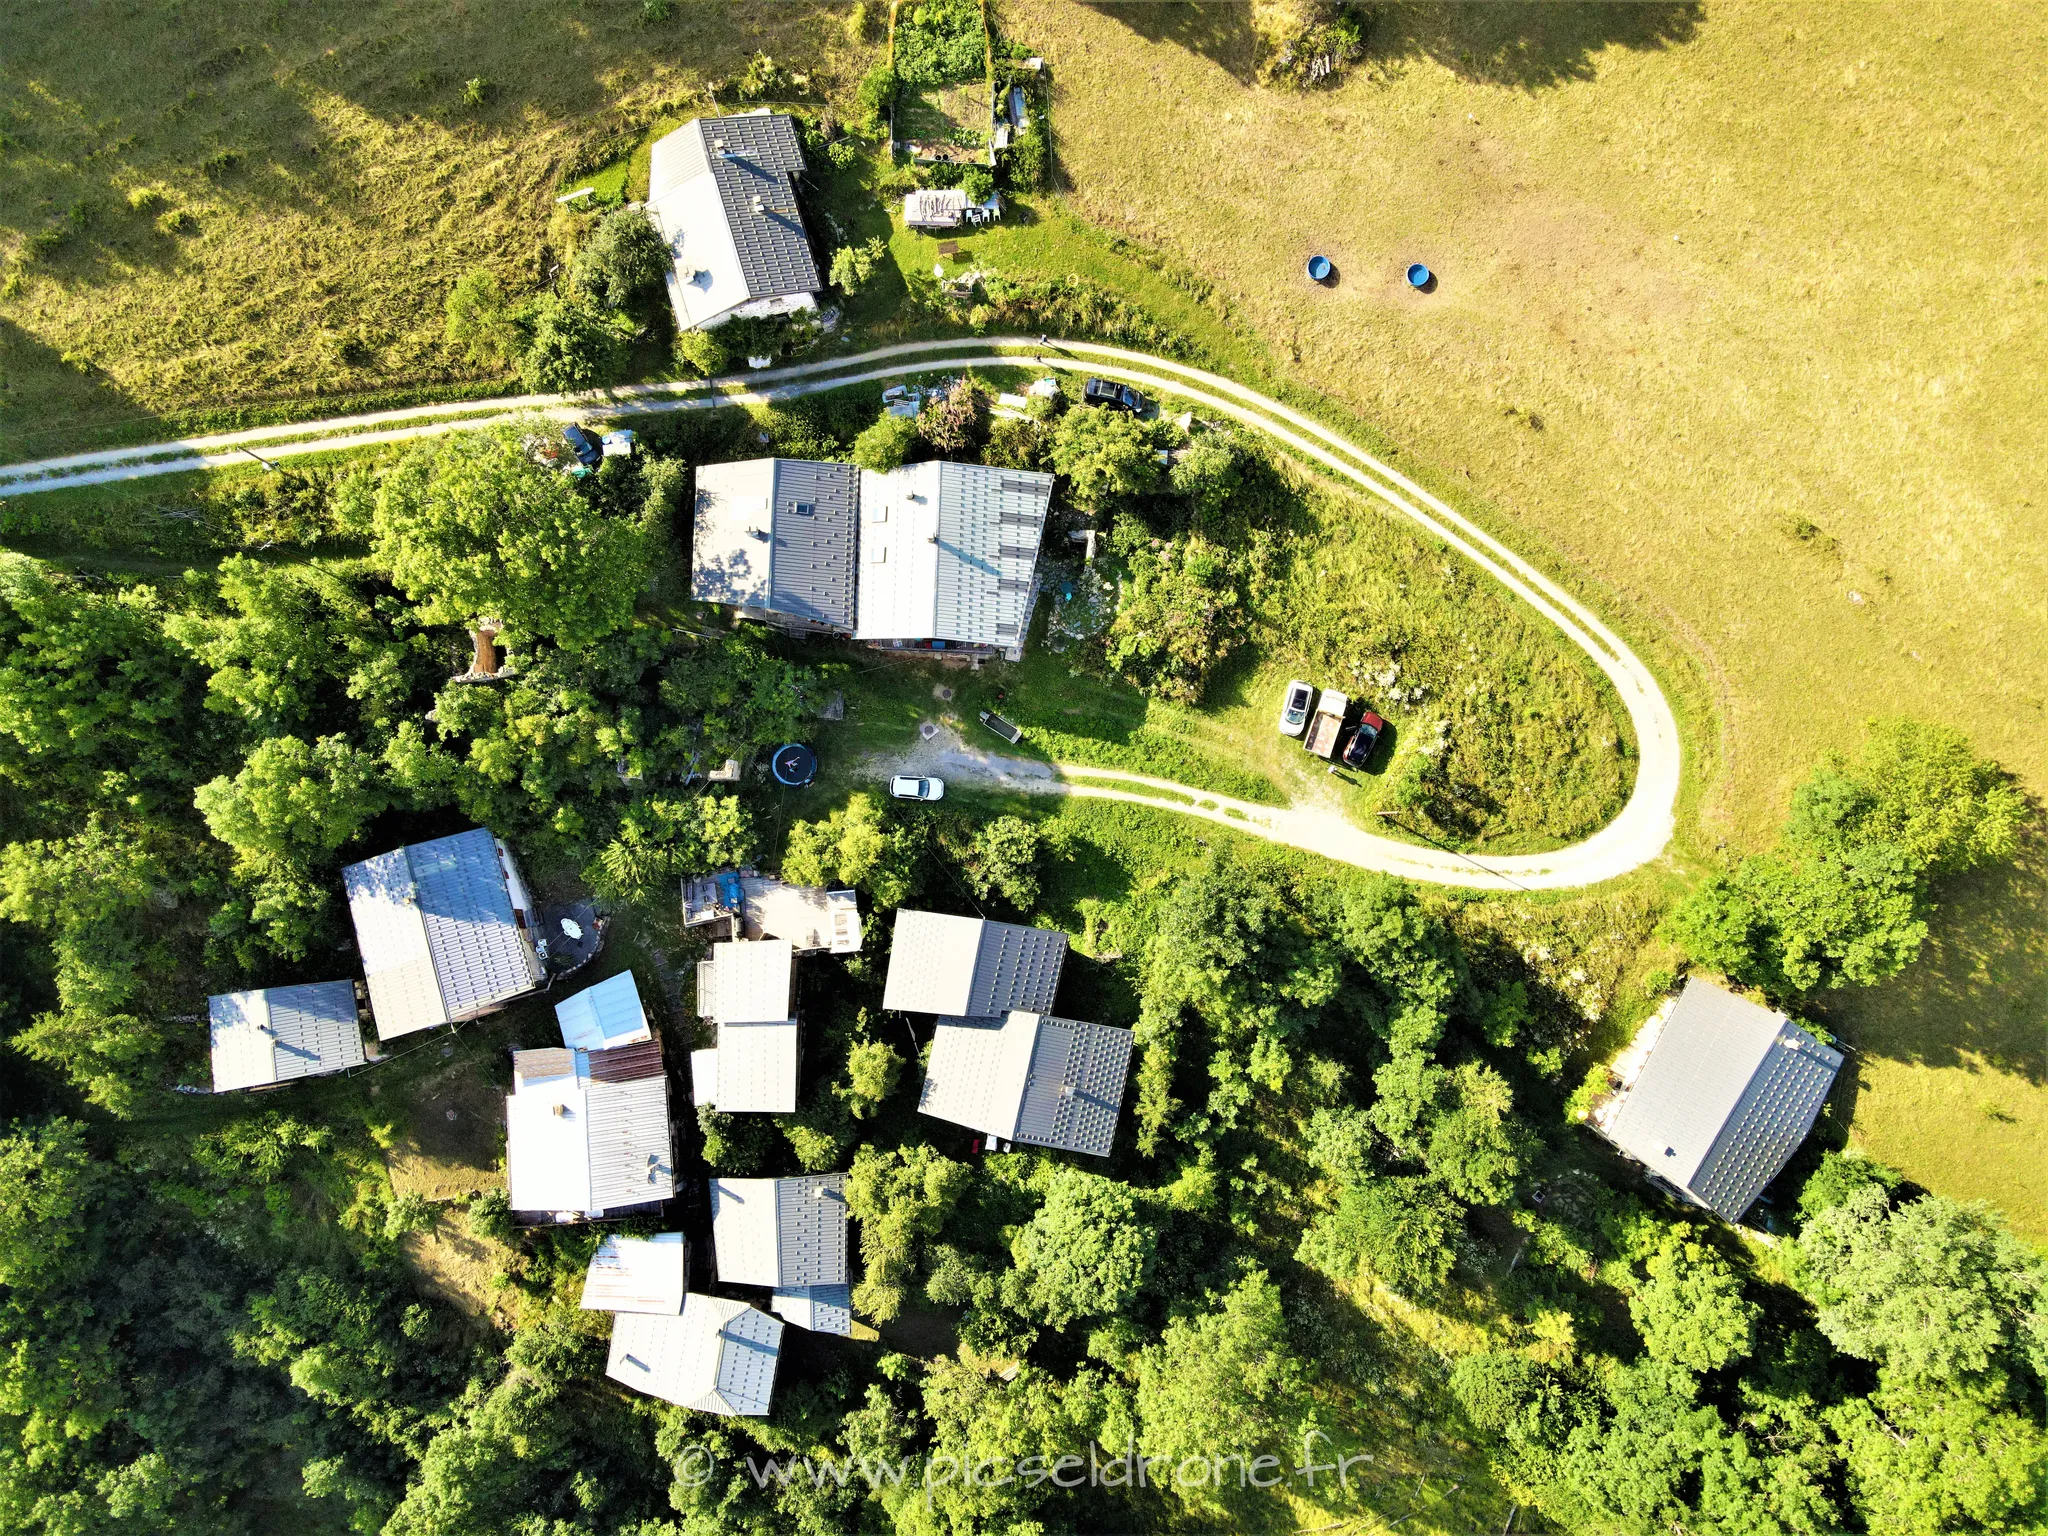 Prises de vue aérienne, photo aérienne de hameaux dans les Alpes, télépilote drone, pilote drone, PICSEL DRONE, CAEN